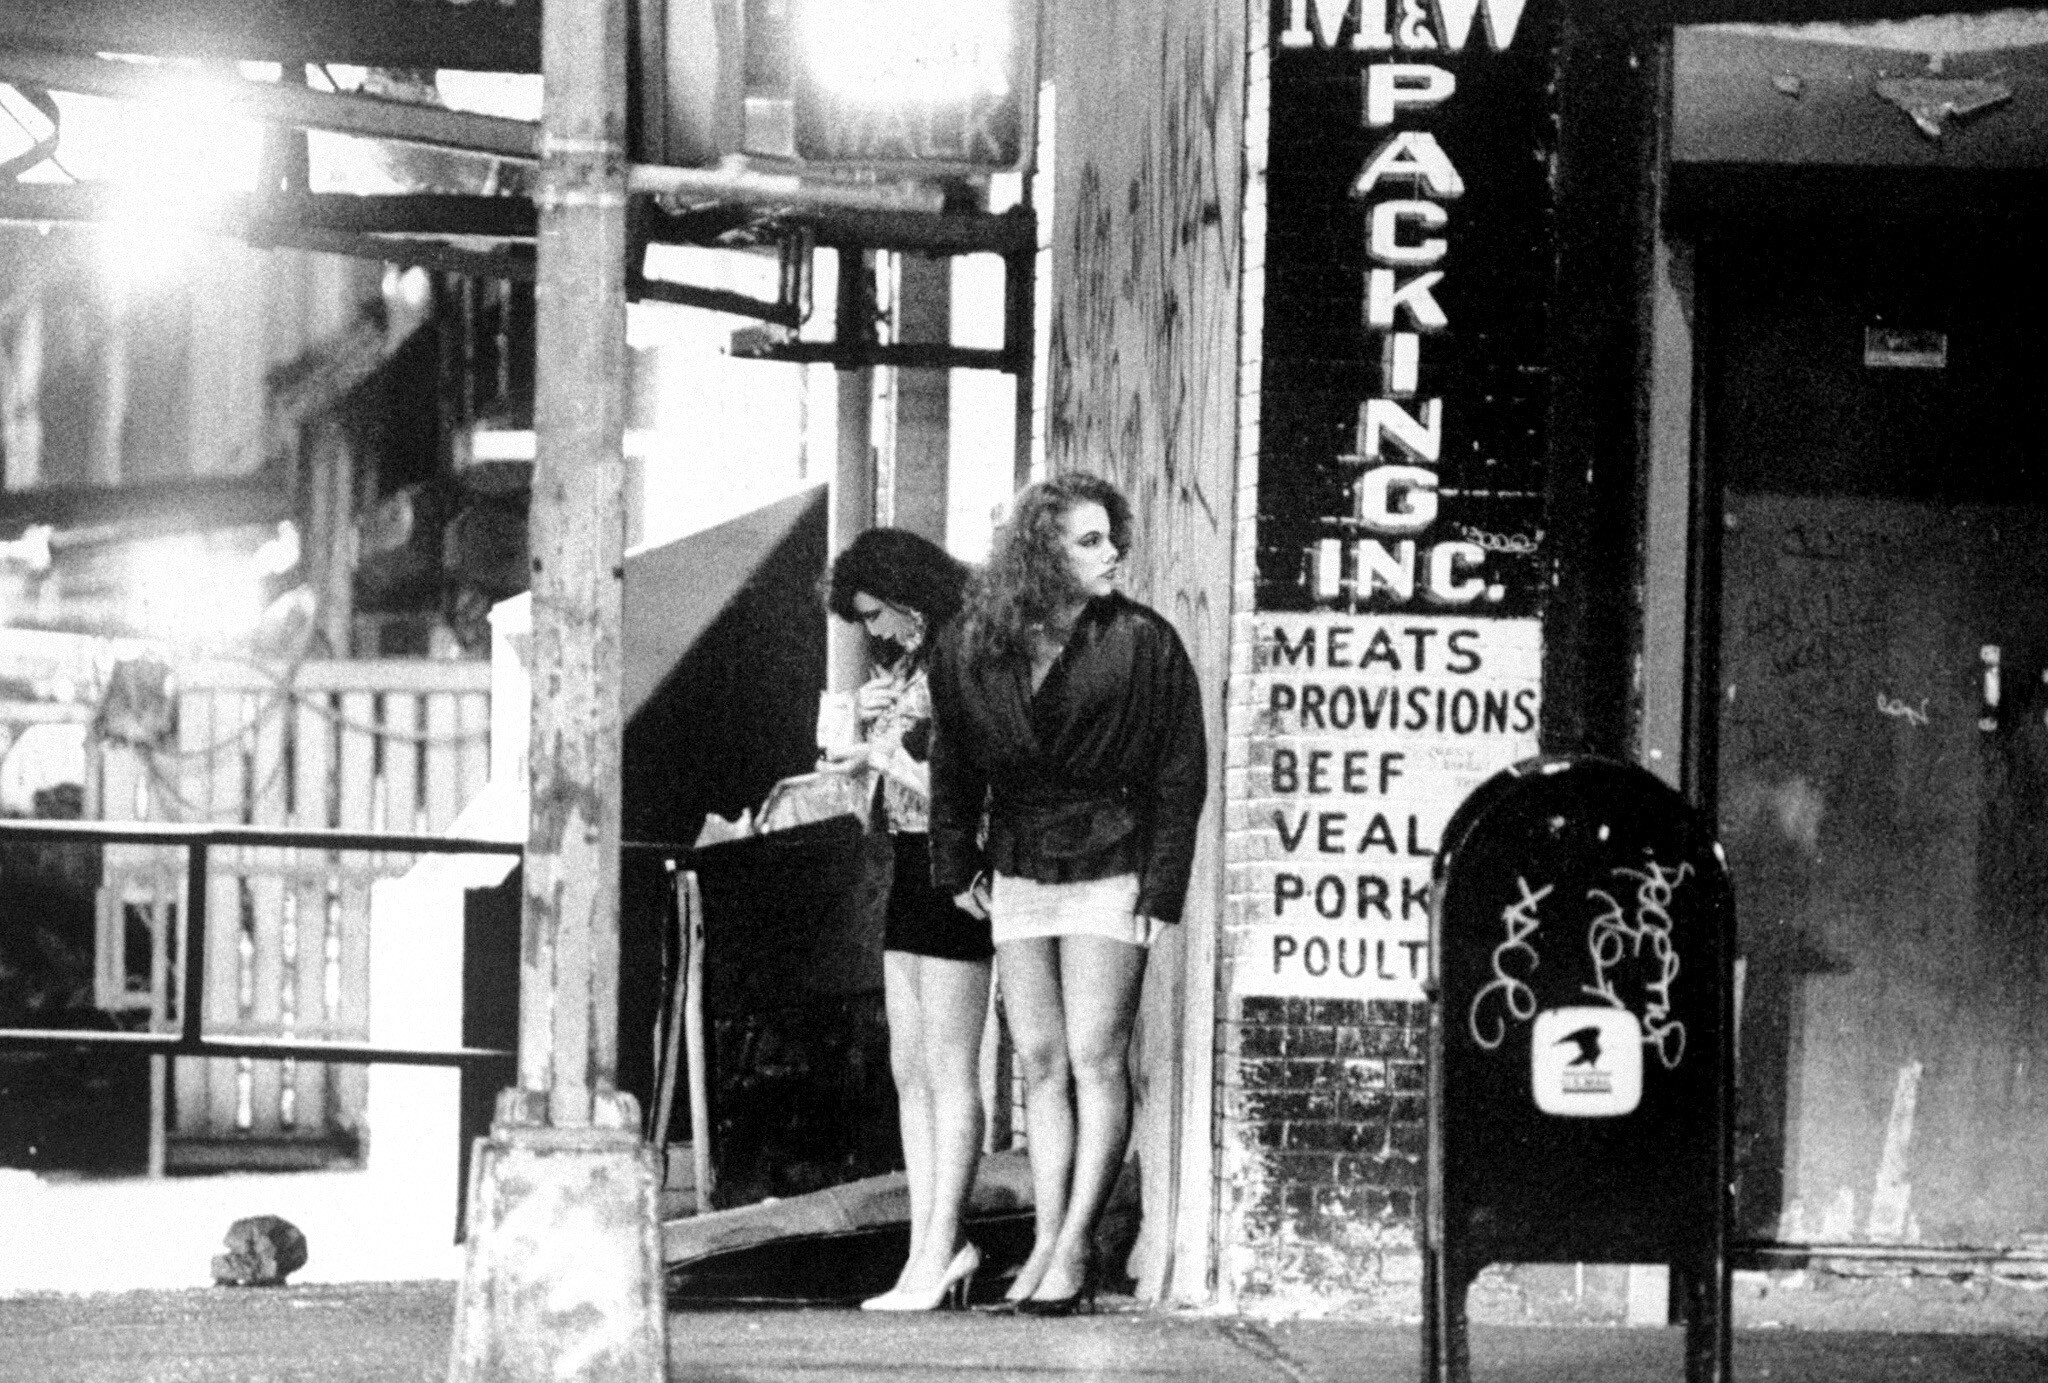 Проститутки на улице Нью-Йорка высматривают клиентов. Фотография Нормана Лоно из архива NY Daily News